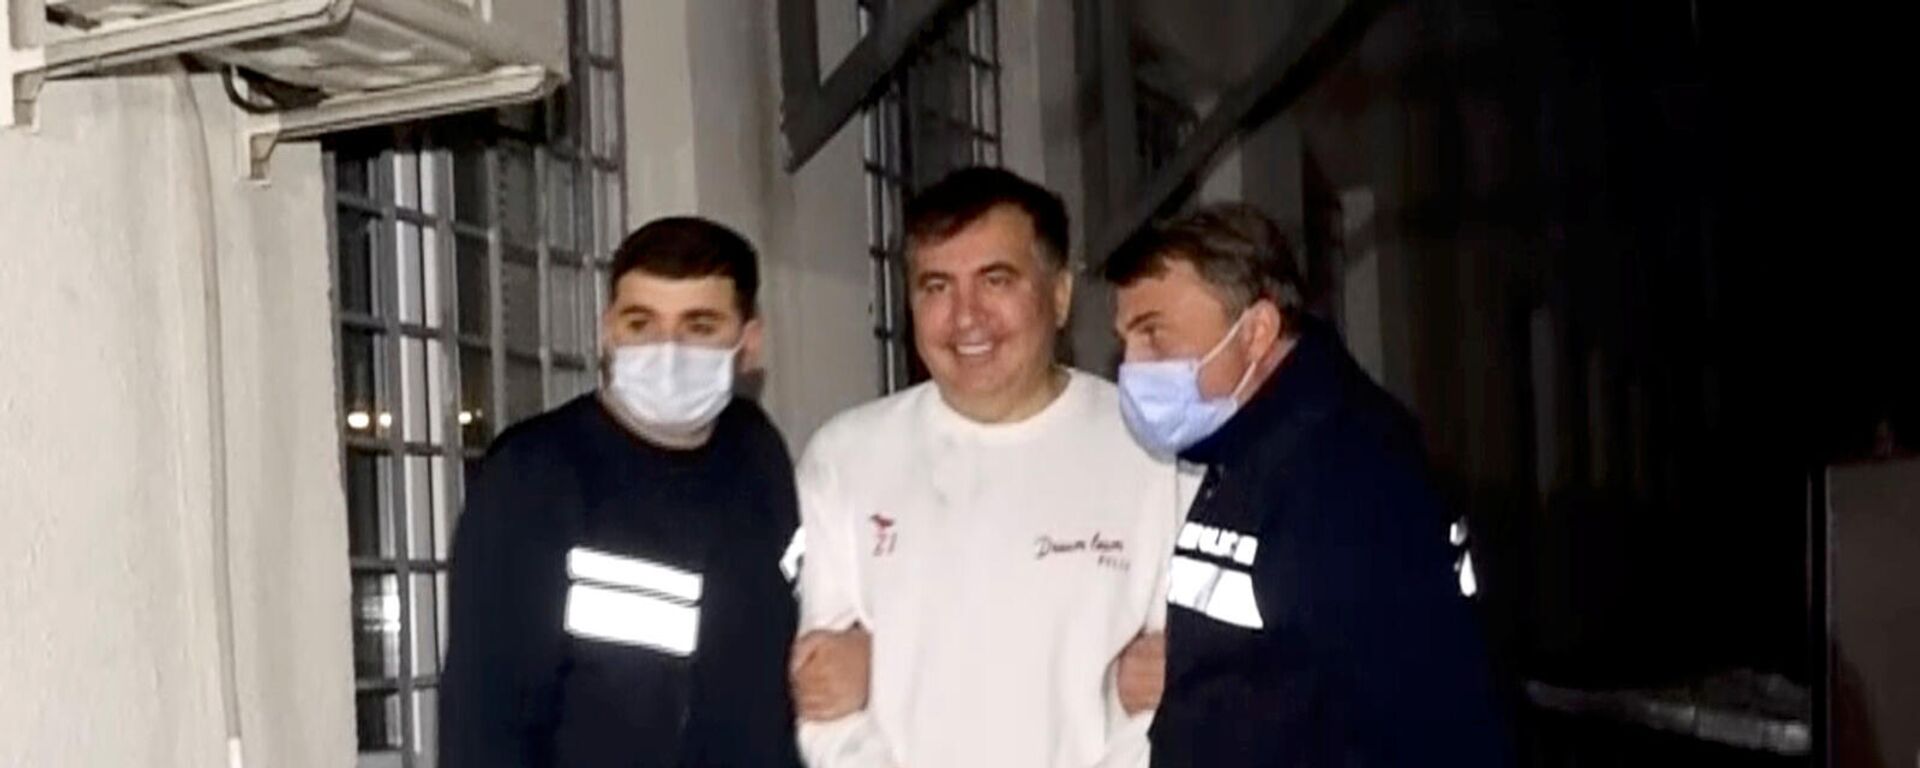 Сотрудники полиции сопровождают бывшего президента Грузии Михаила Саакашвили, который был задержан после возвращения в Грузию (1 октября 2021). Рустави - Sputnik Армения, 1920, 06.10.2021